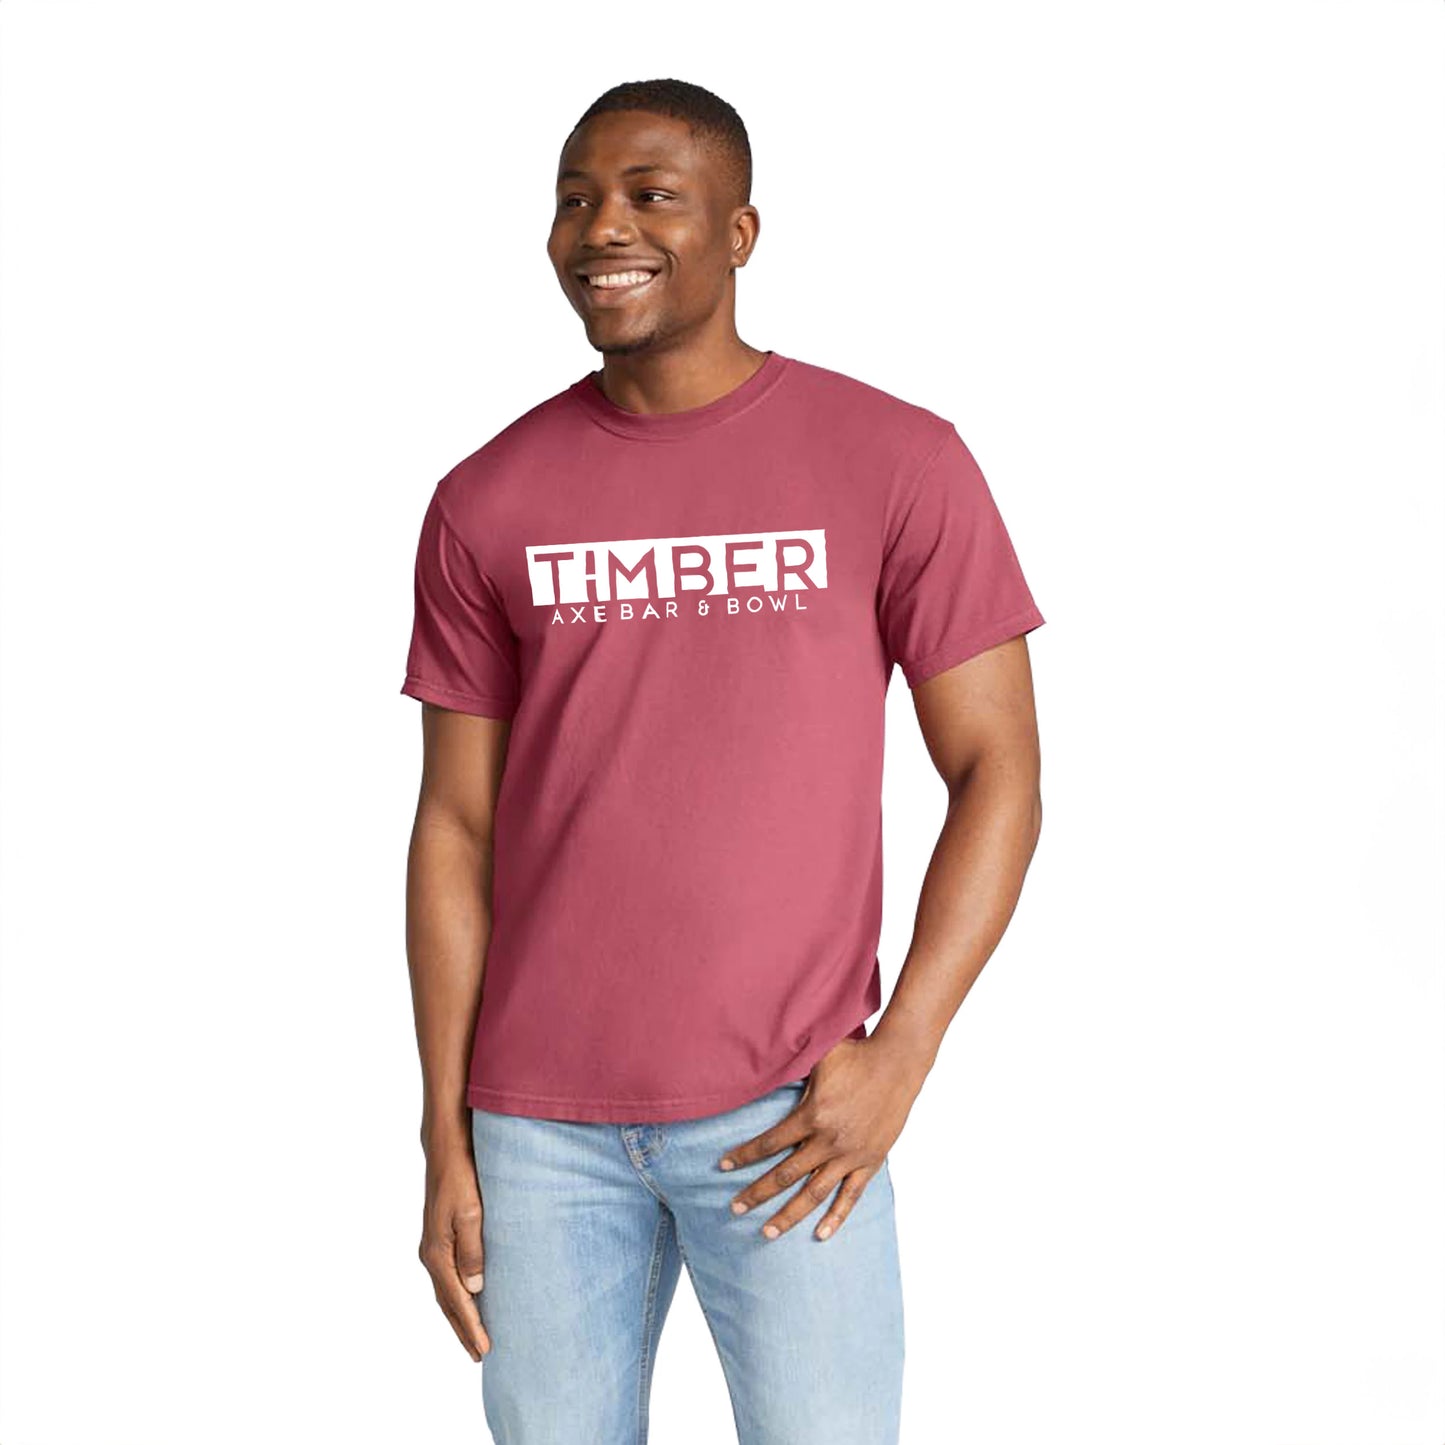 Timber Axe Bar & Bowl T-Shirt